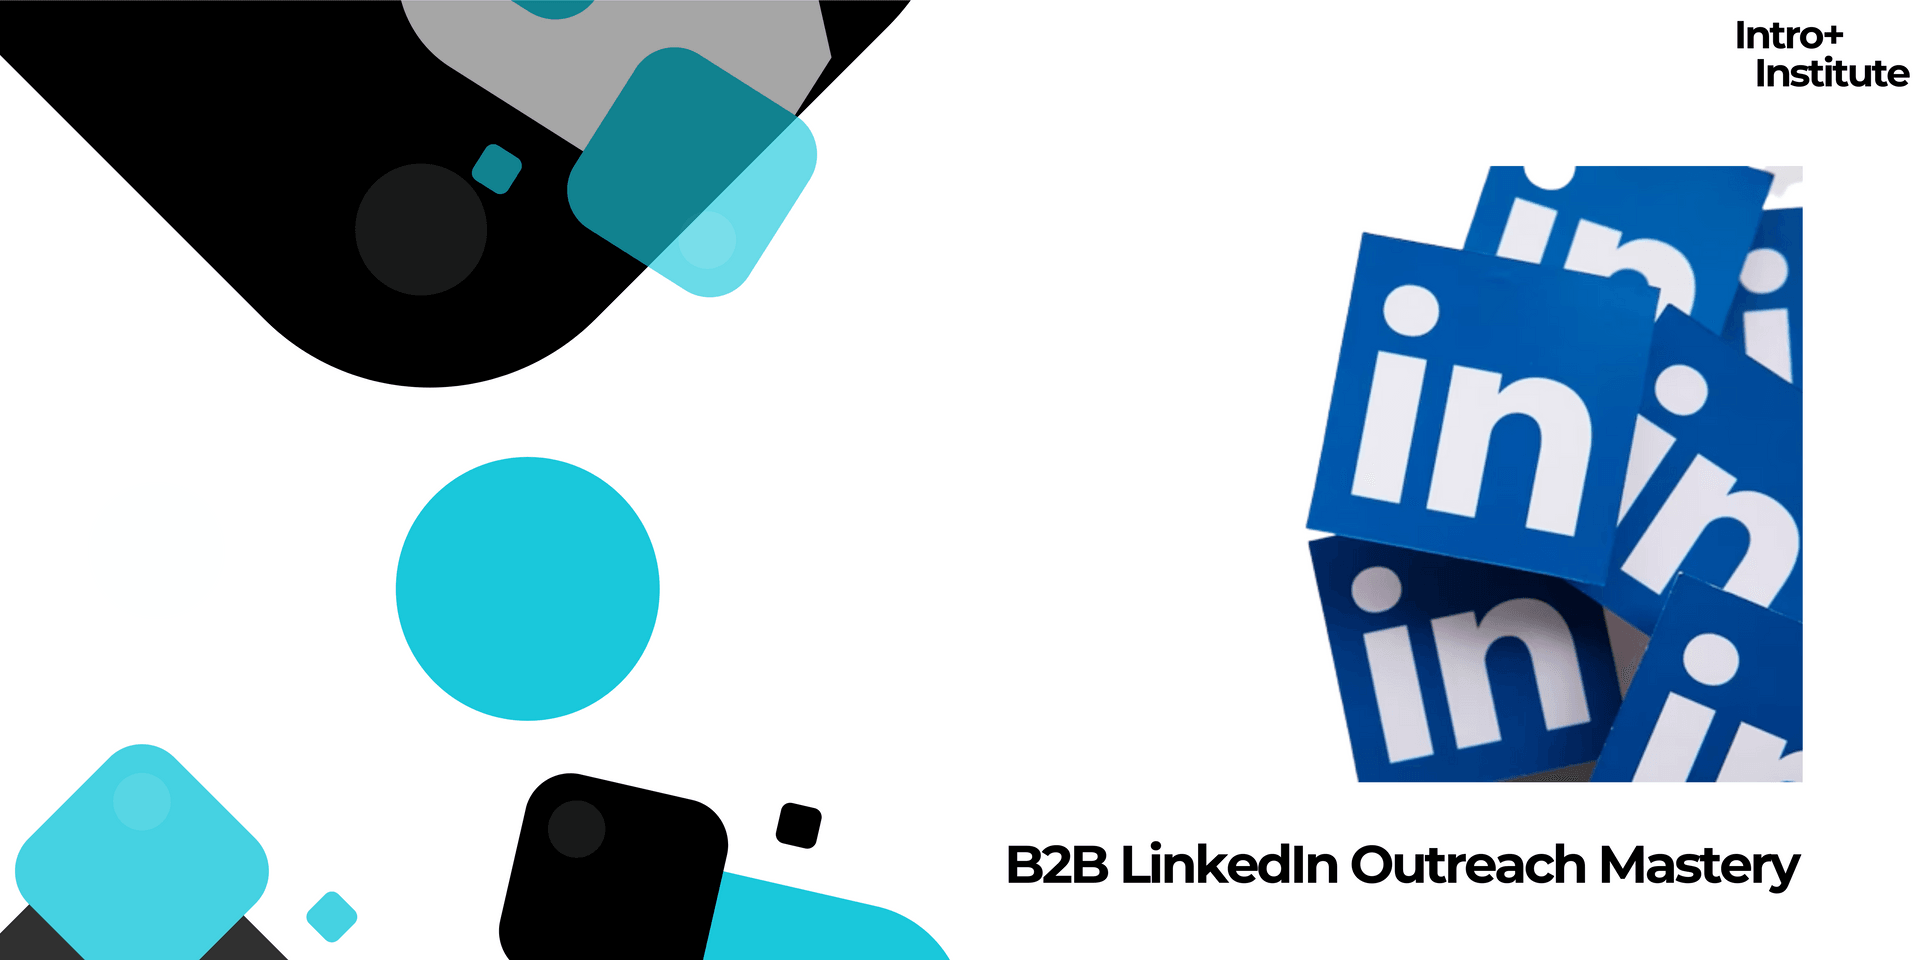 B2B LinkedIn Outreach Mastery